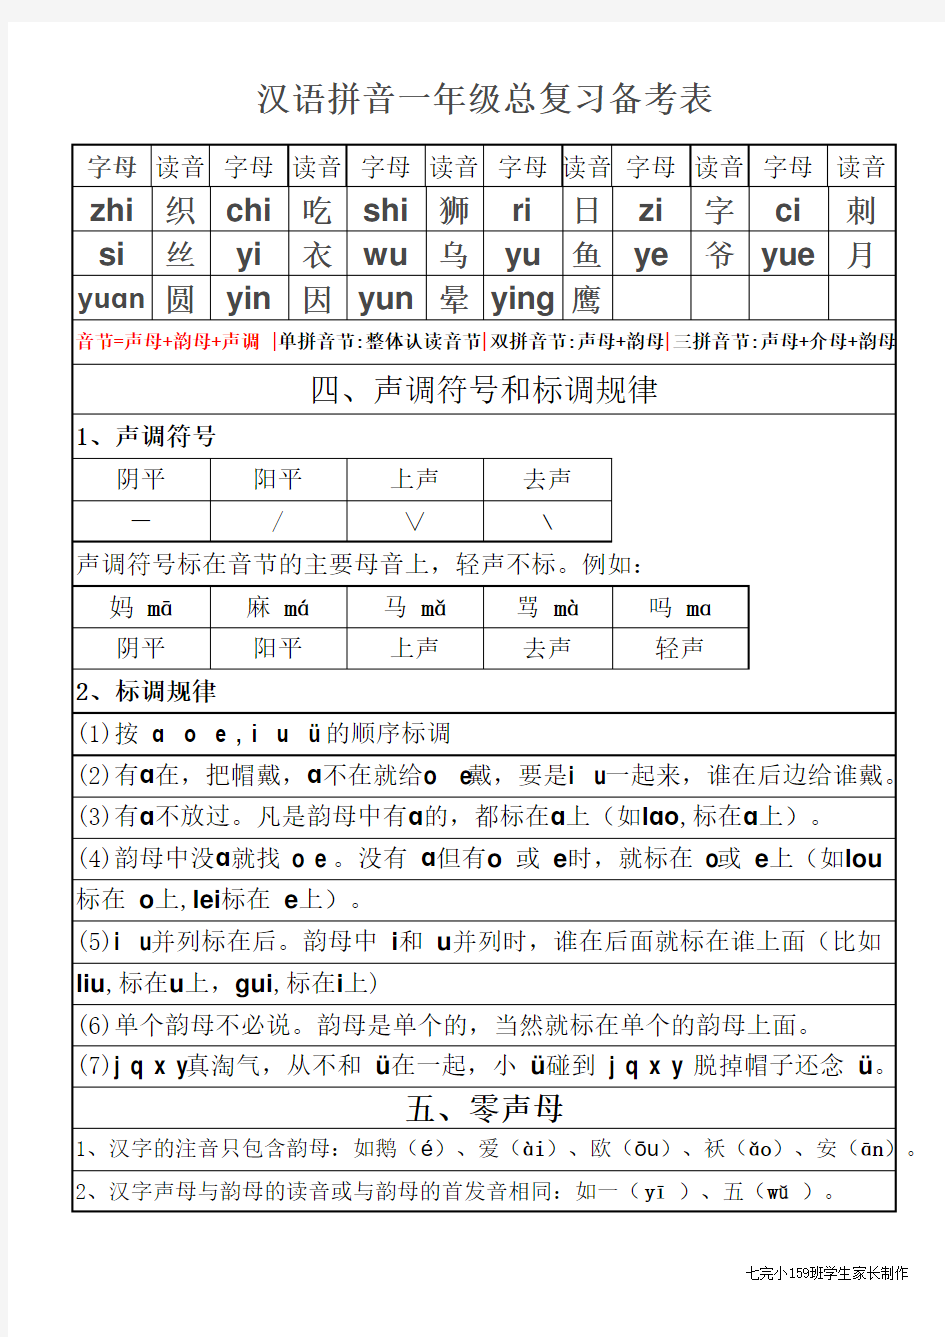 汉语拼音一年级总复习备考表(打印版)